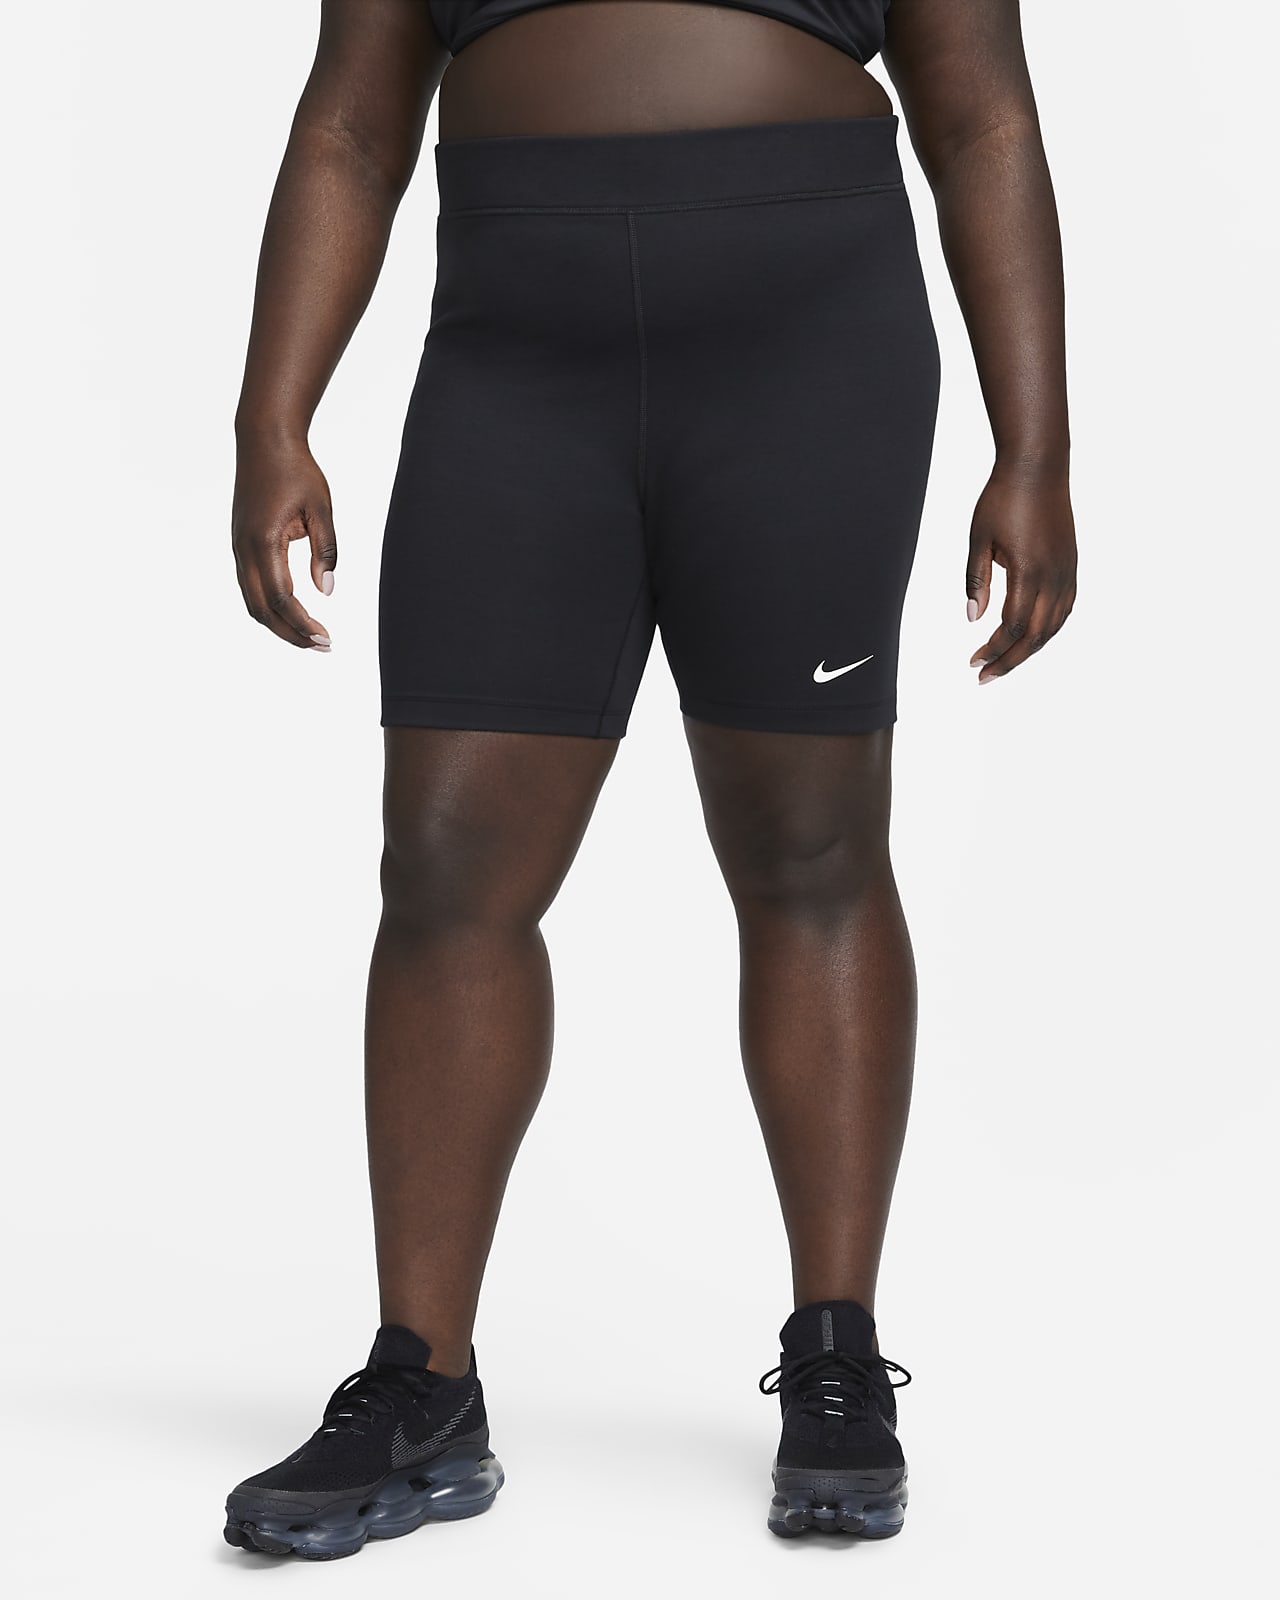 Nike Sportswear Classics-cykelshorts med høj talje cm) til kvinder (plus size).